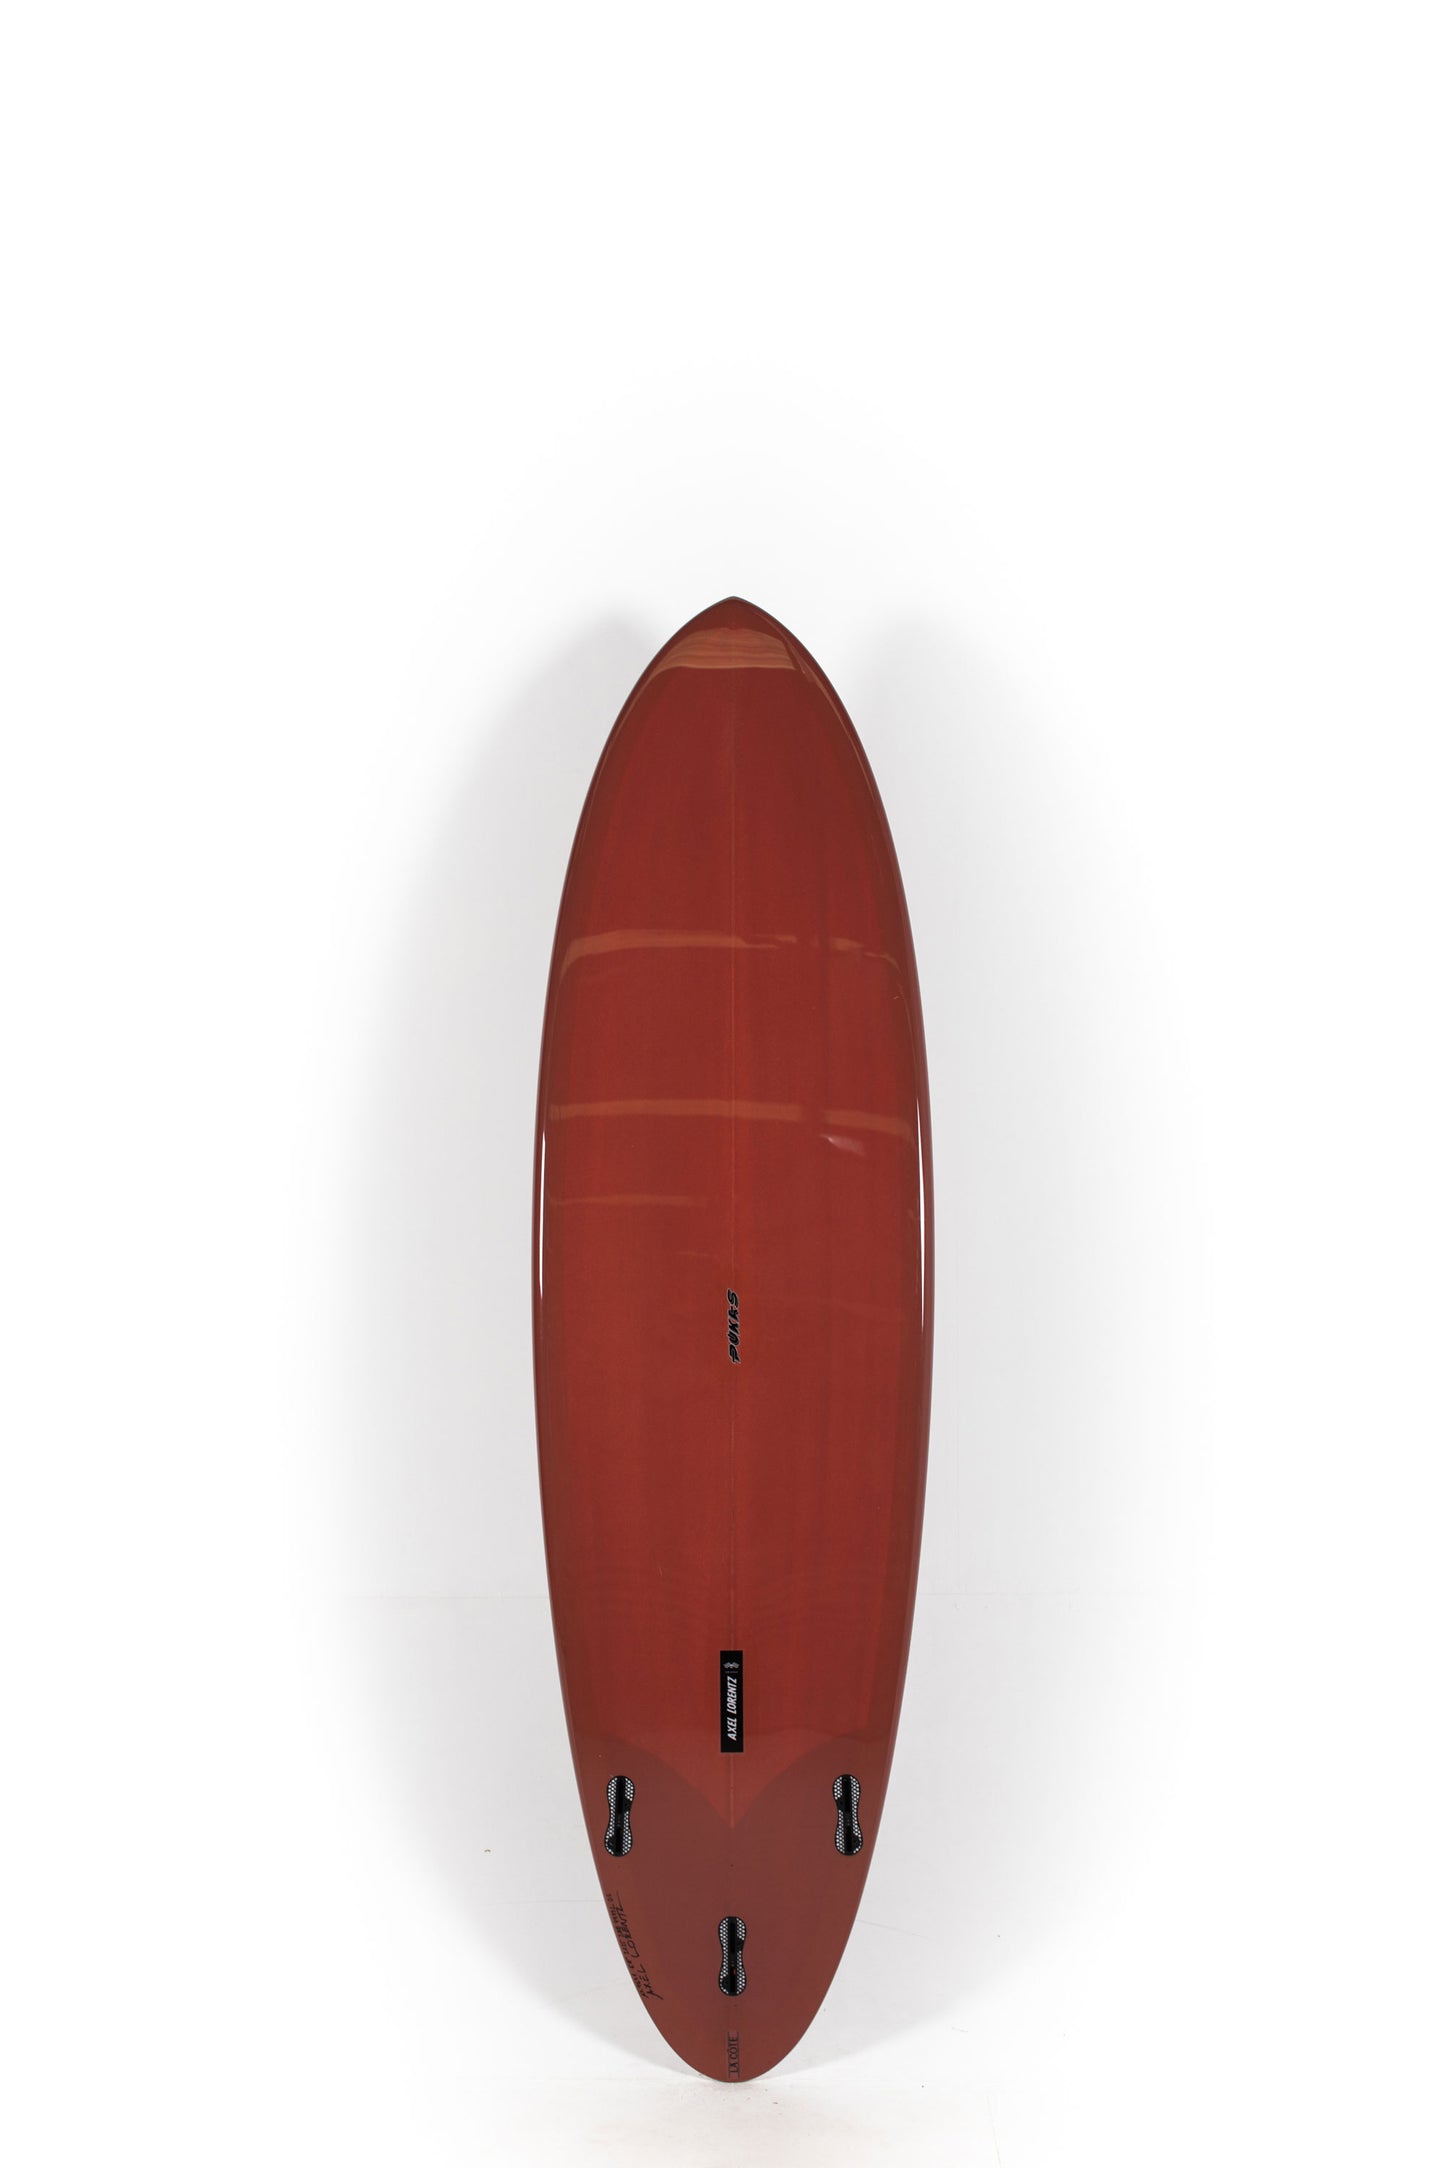 Pukas Surf Shop - Pukas Surfboard - LA CÔTE by Axel Lorentz - 6´8" x 21,25 x 2,88 - 44,4L -  AX09631